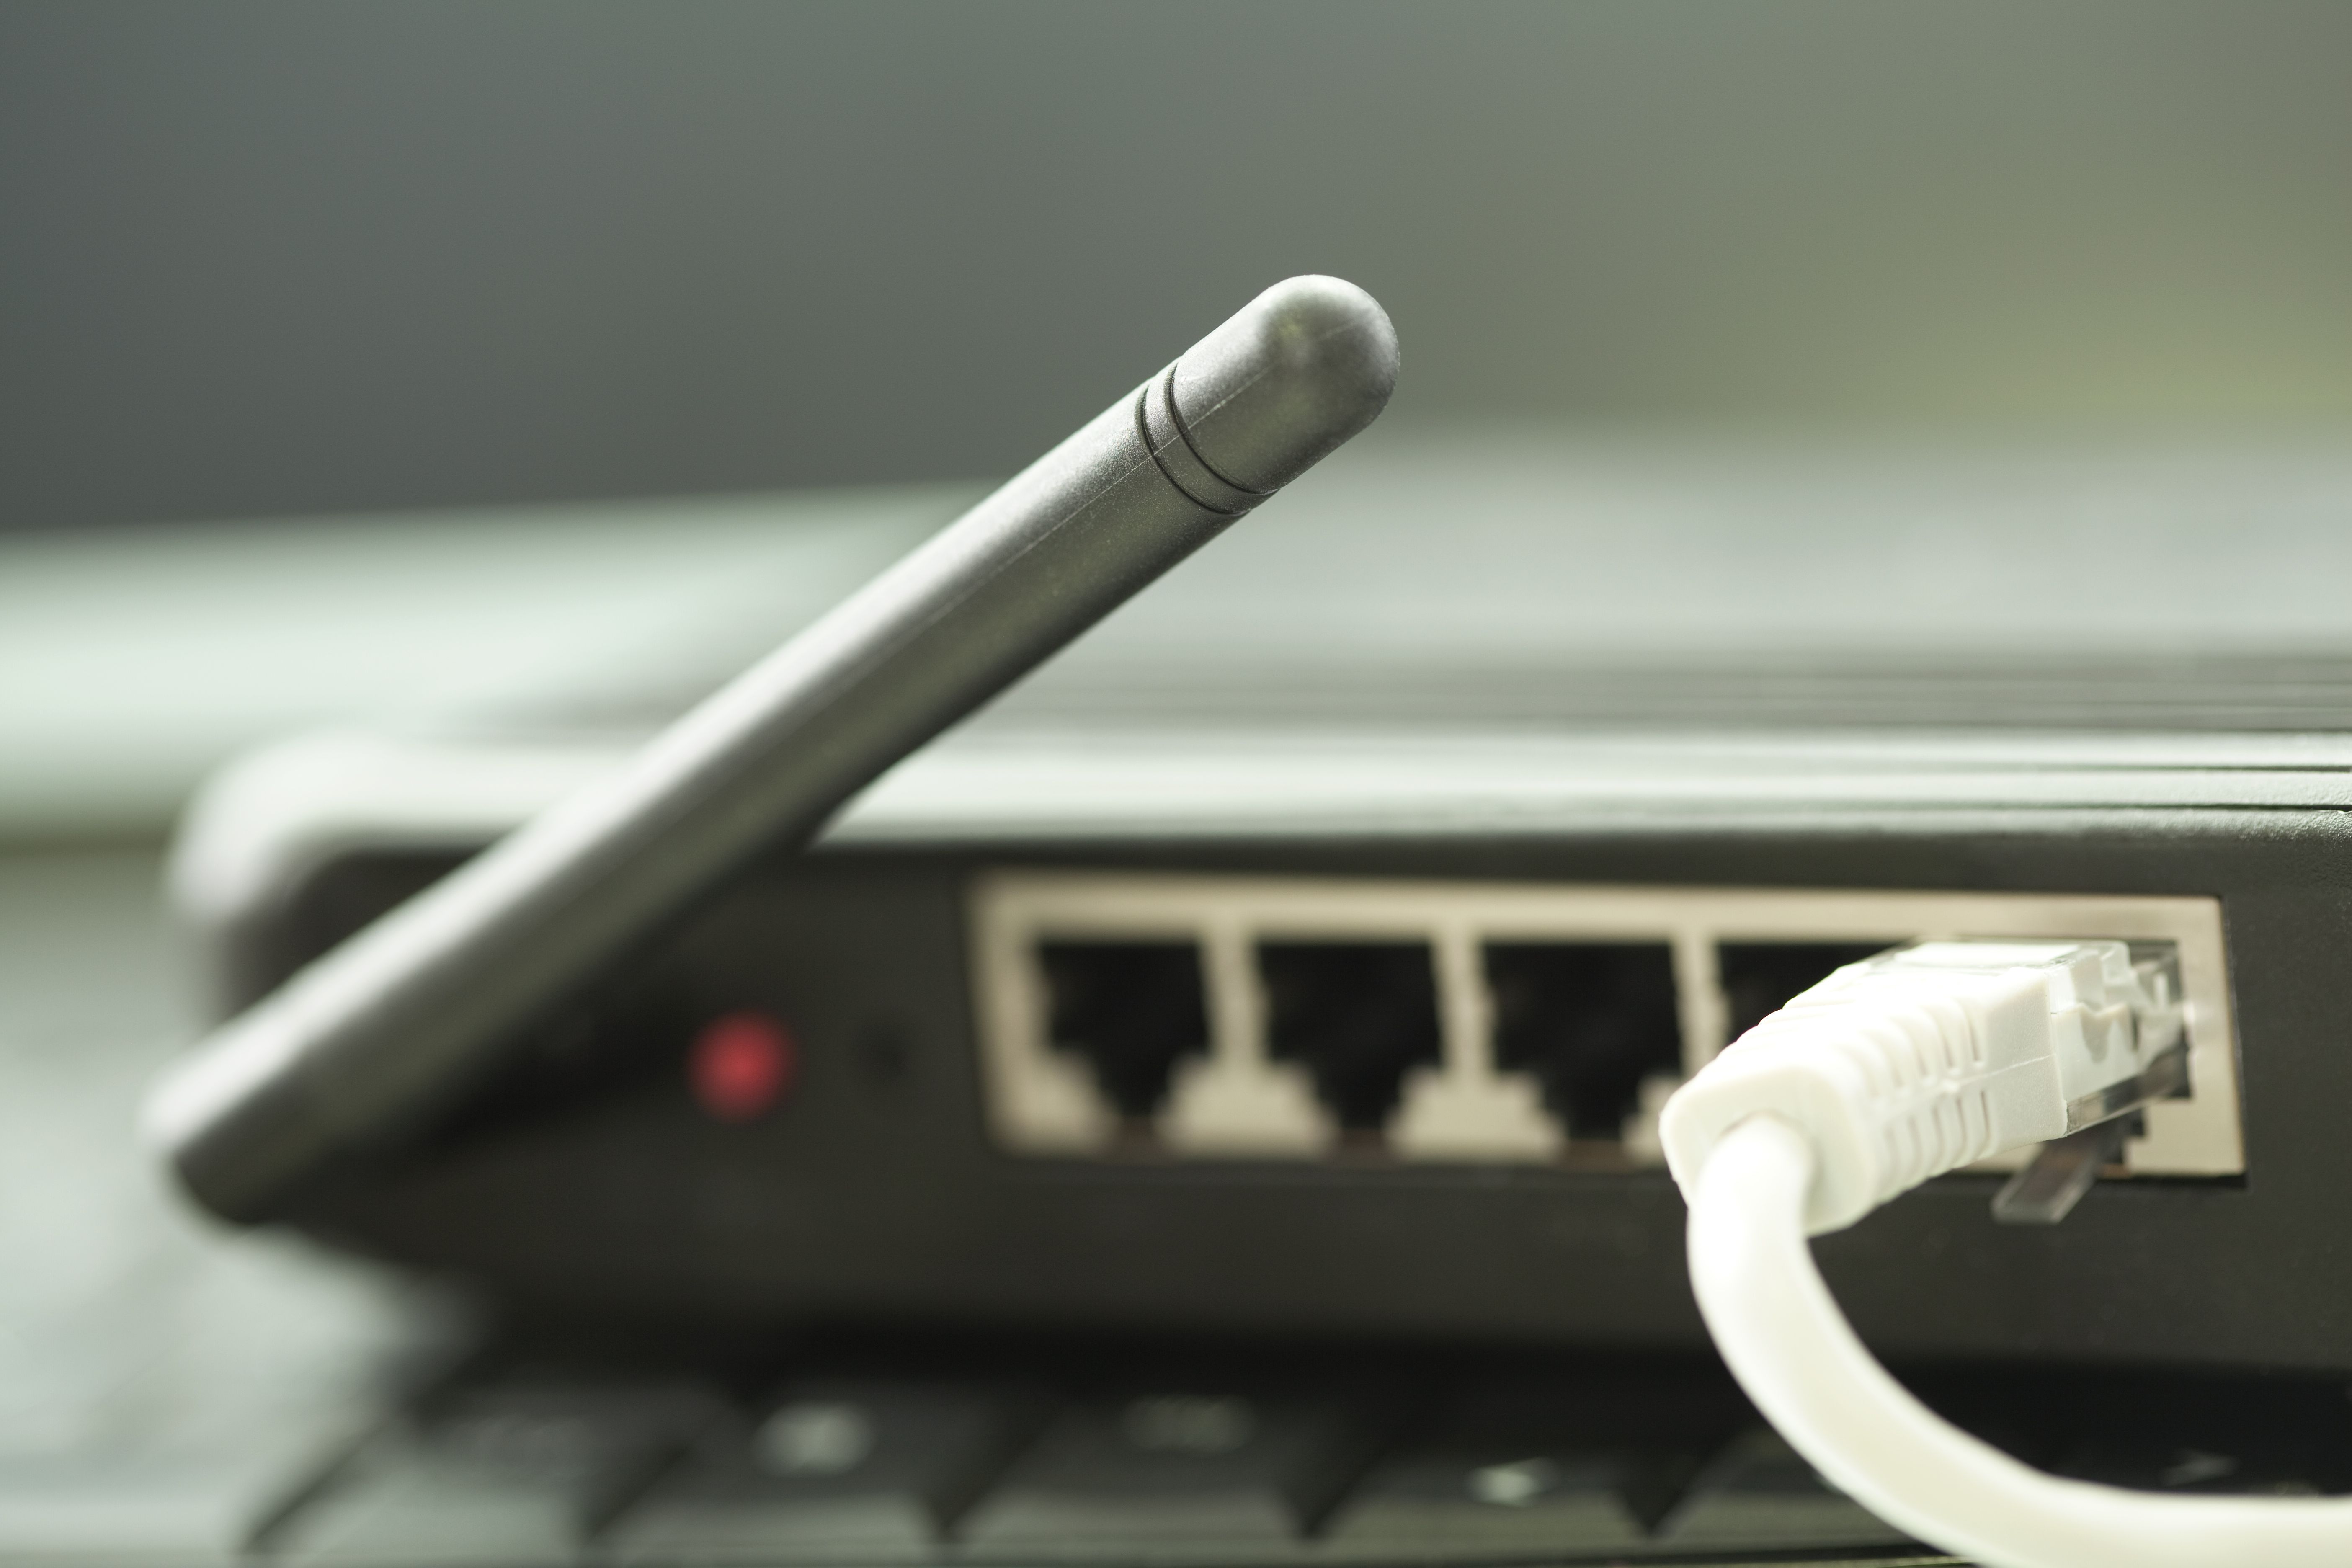 připojení k internetu pomocí wlan routeru v domácí kanceláři